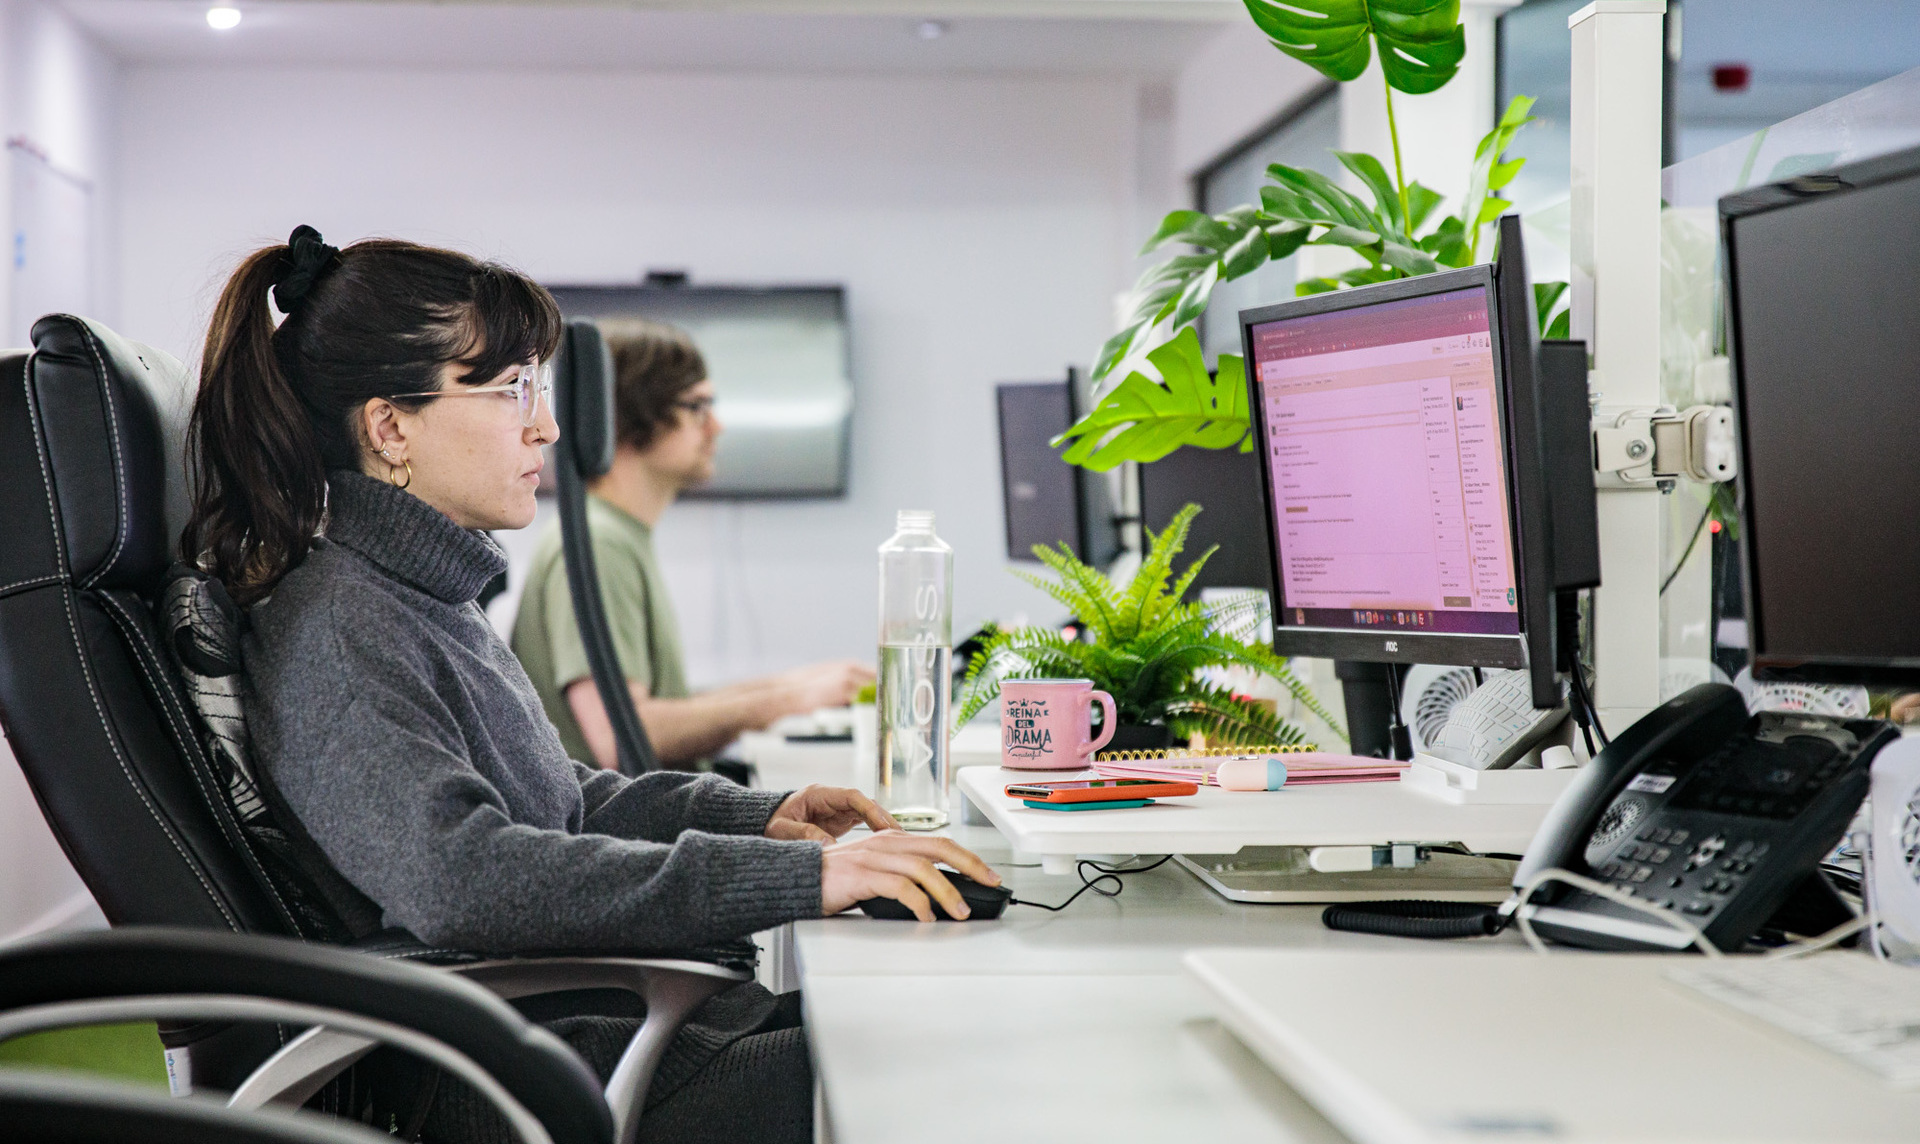 A web designer sat at her desk working on her computer